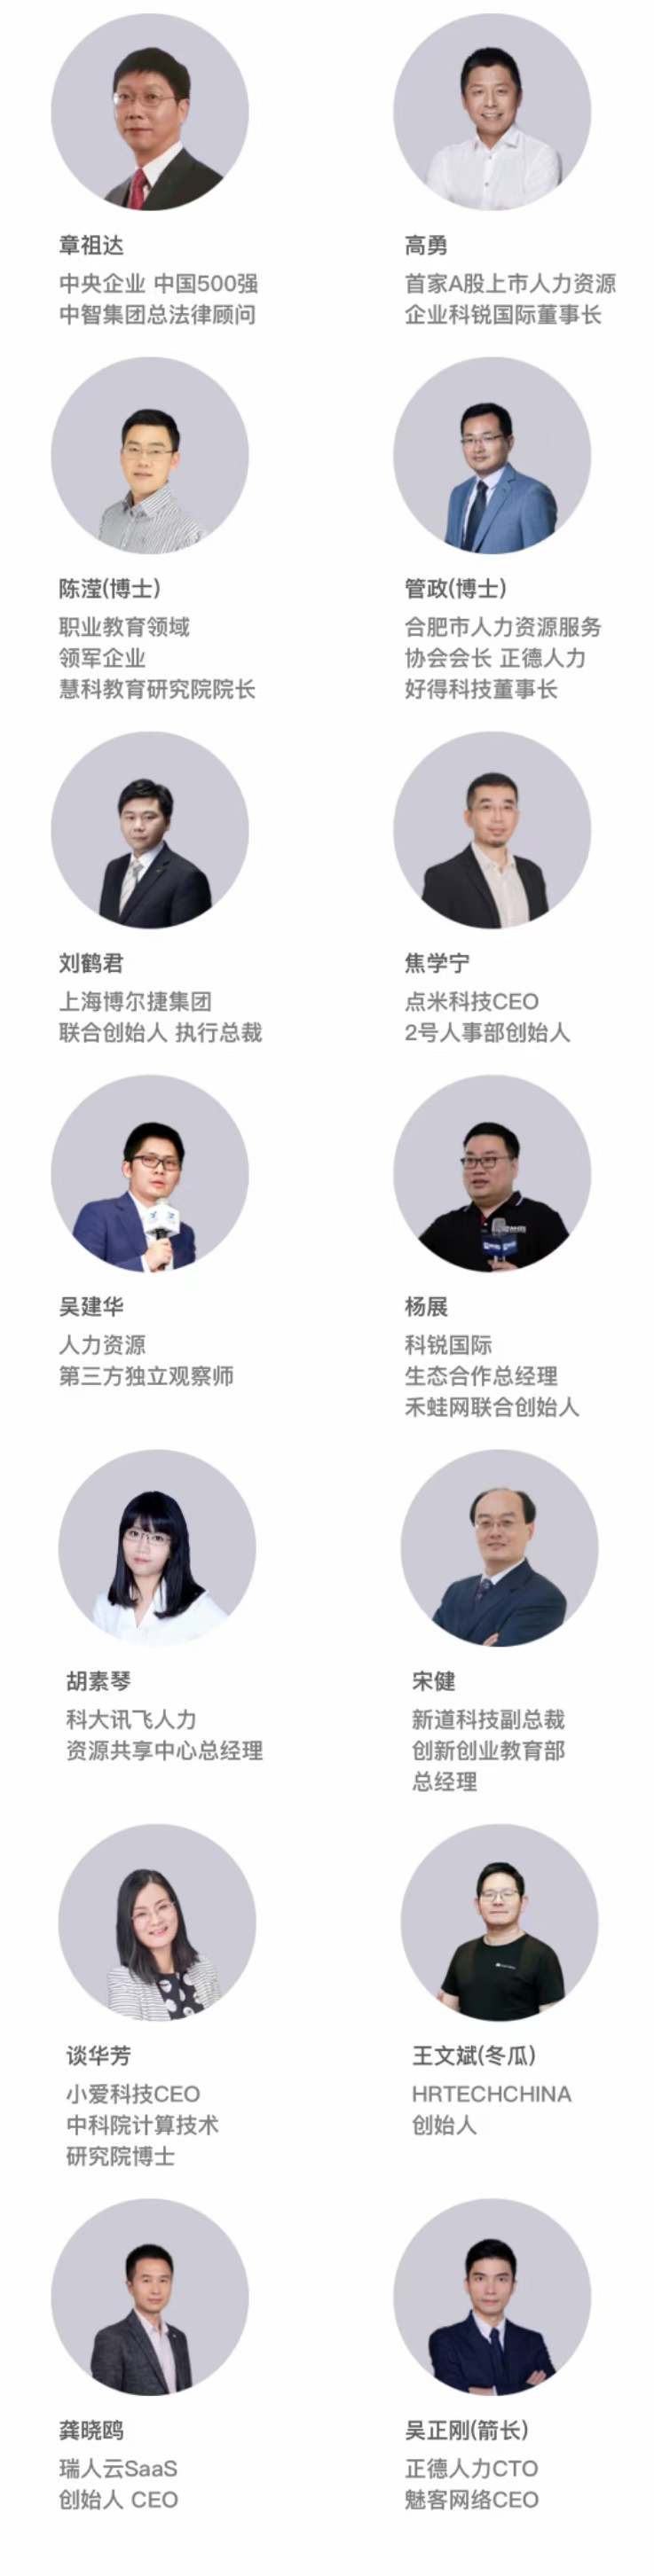 中国人力资源与职业教育融合峰会暨第十届安徽管理高峰论坛